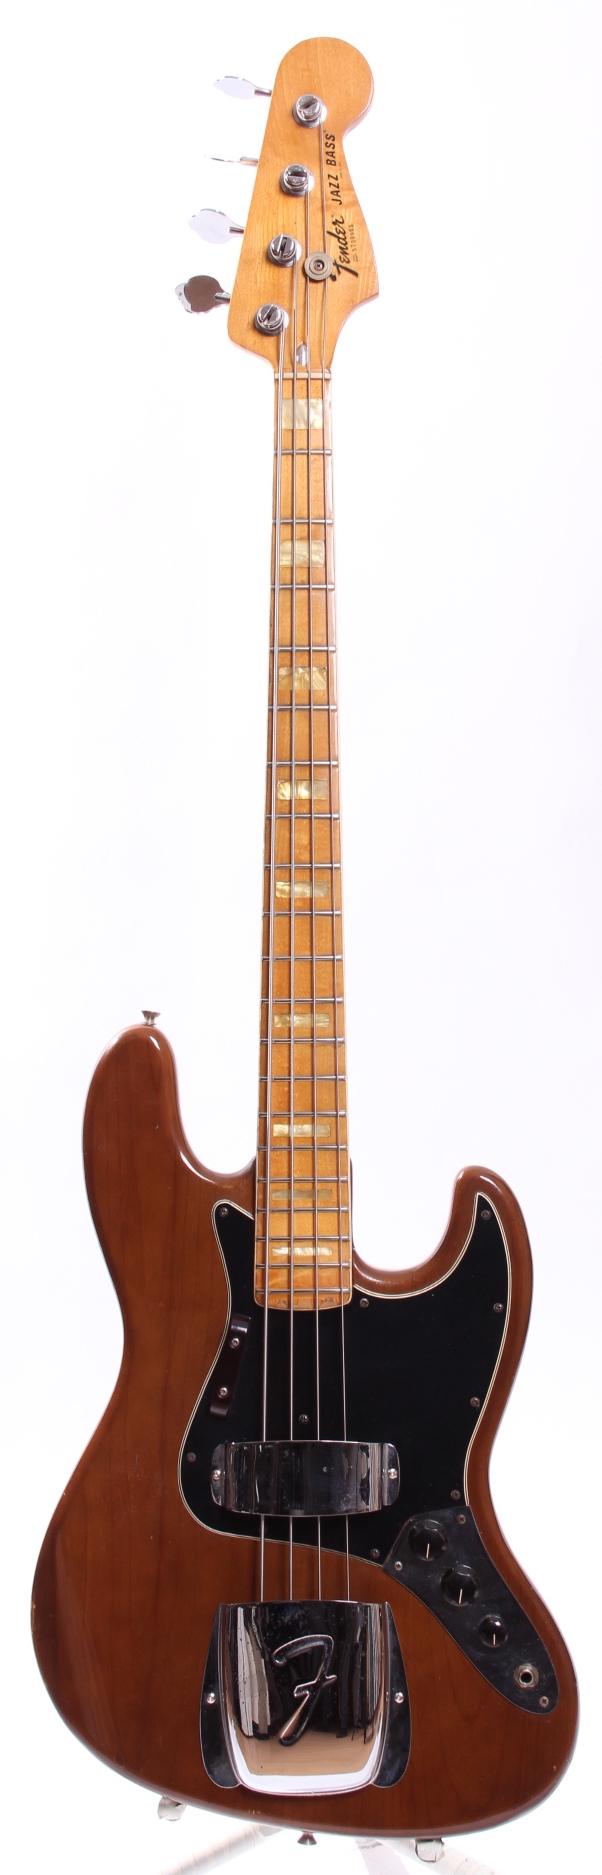 Fender Jazz Bass Lightweight 1977 Mocha Brown Bass For Sale Yeahman S